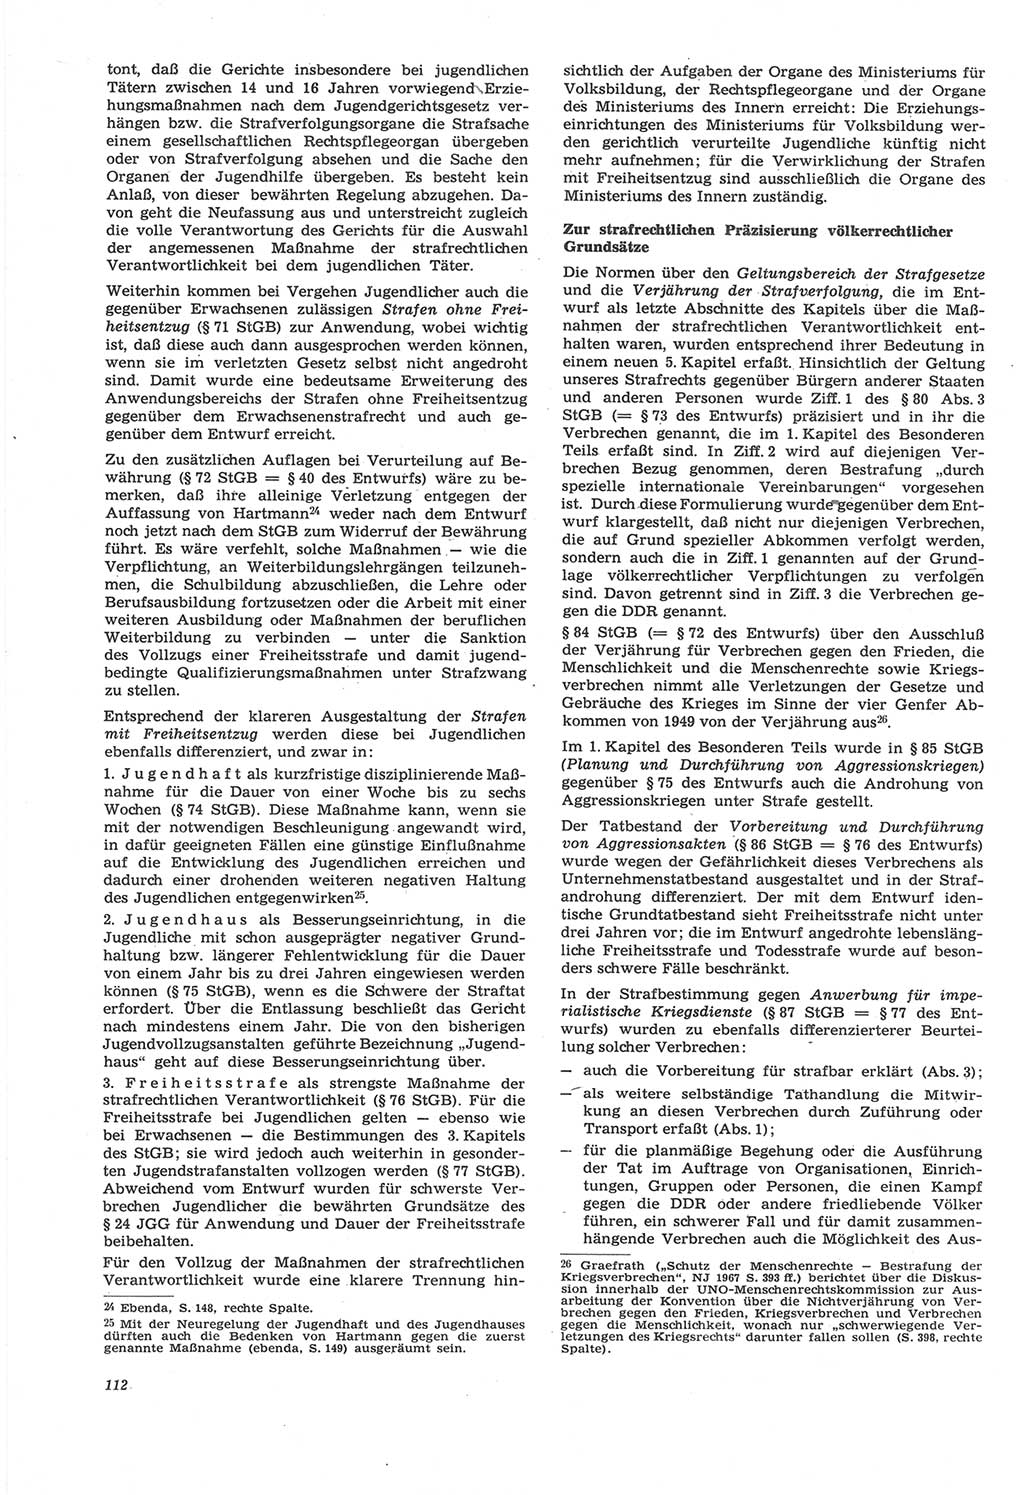 Neue Justiz (NJ), Zeitschrift für Recht und Rechtswissenschaft [Deutsche Demokratische Republik (DDR)], 22. Jahrgang 1968, Seite 112 (NJ DDR 1968, S. 112)